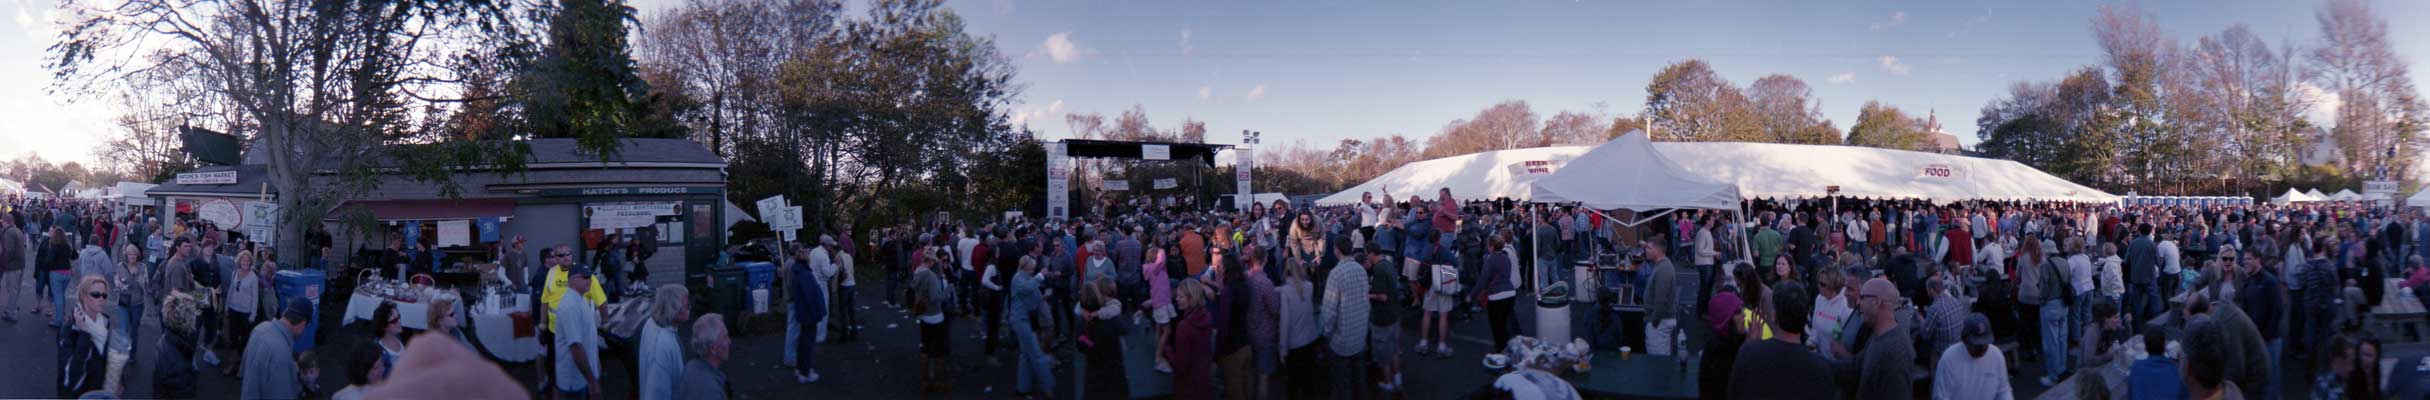 Cape Cod Festival